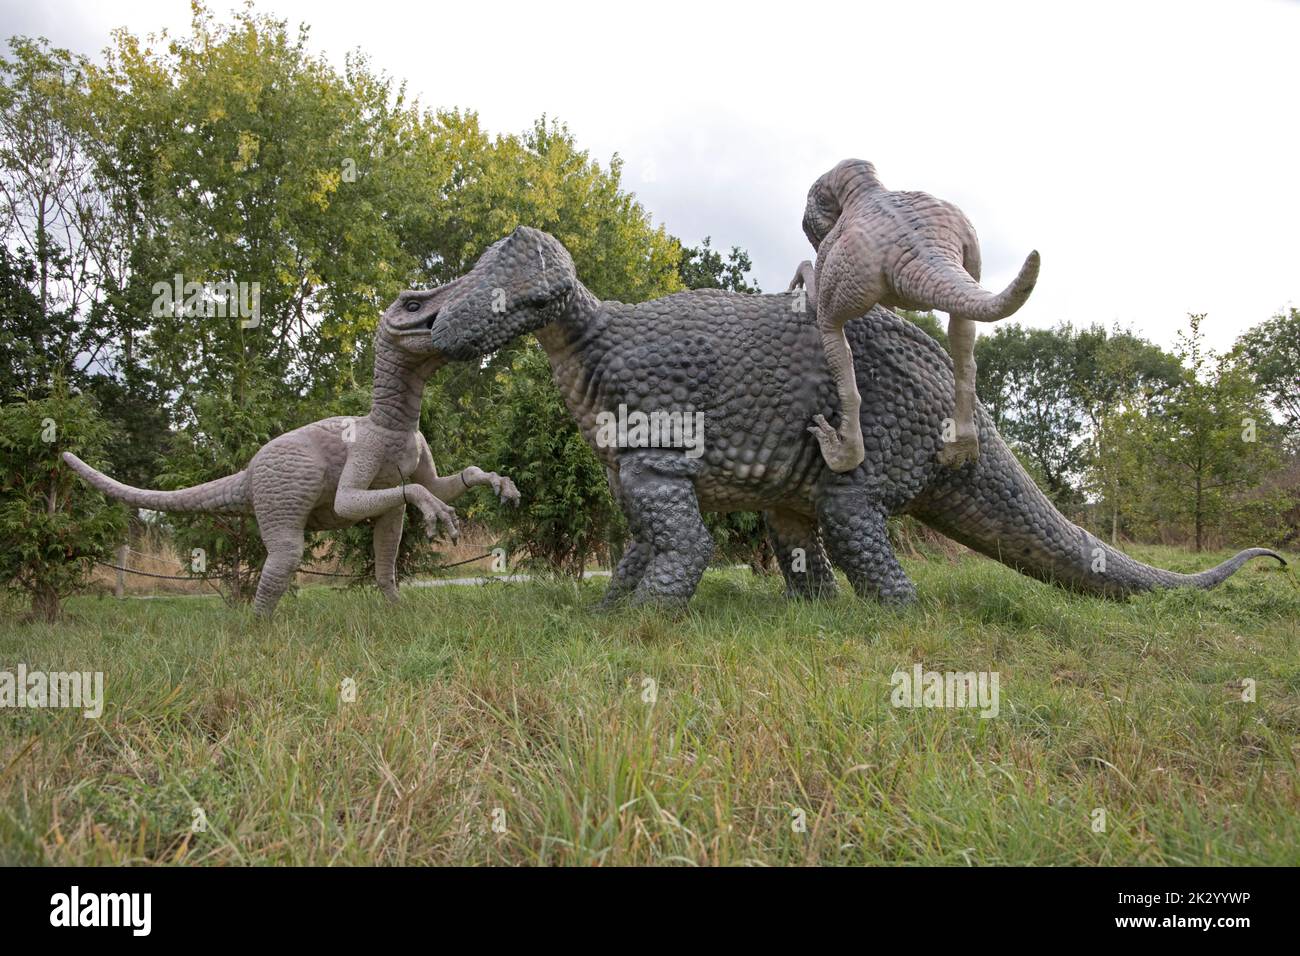 Lifesize models of Deinonychus theropods attaching herbivorous Tenontosaurus All Things Wild, Honeybourne, UK Stock Photo